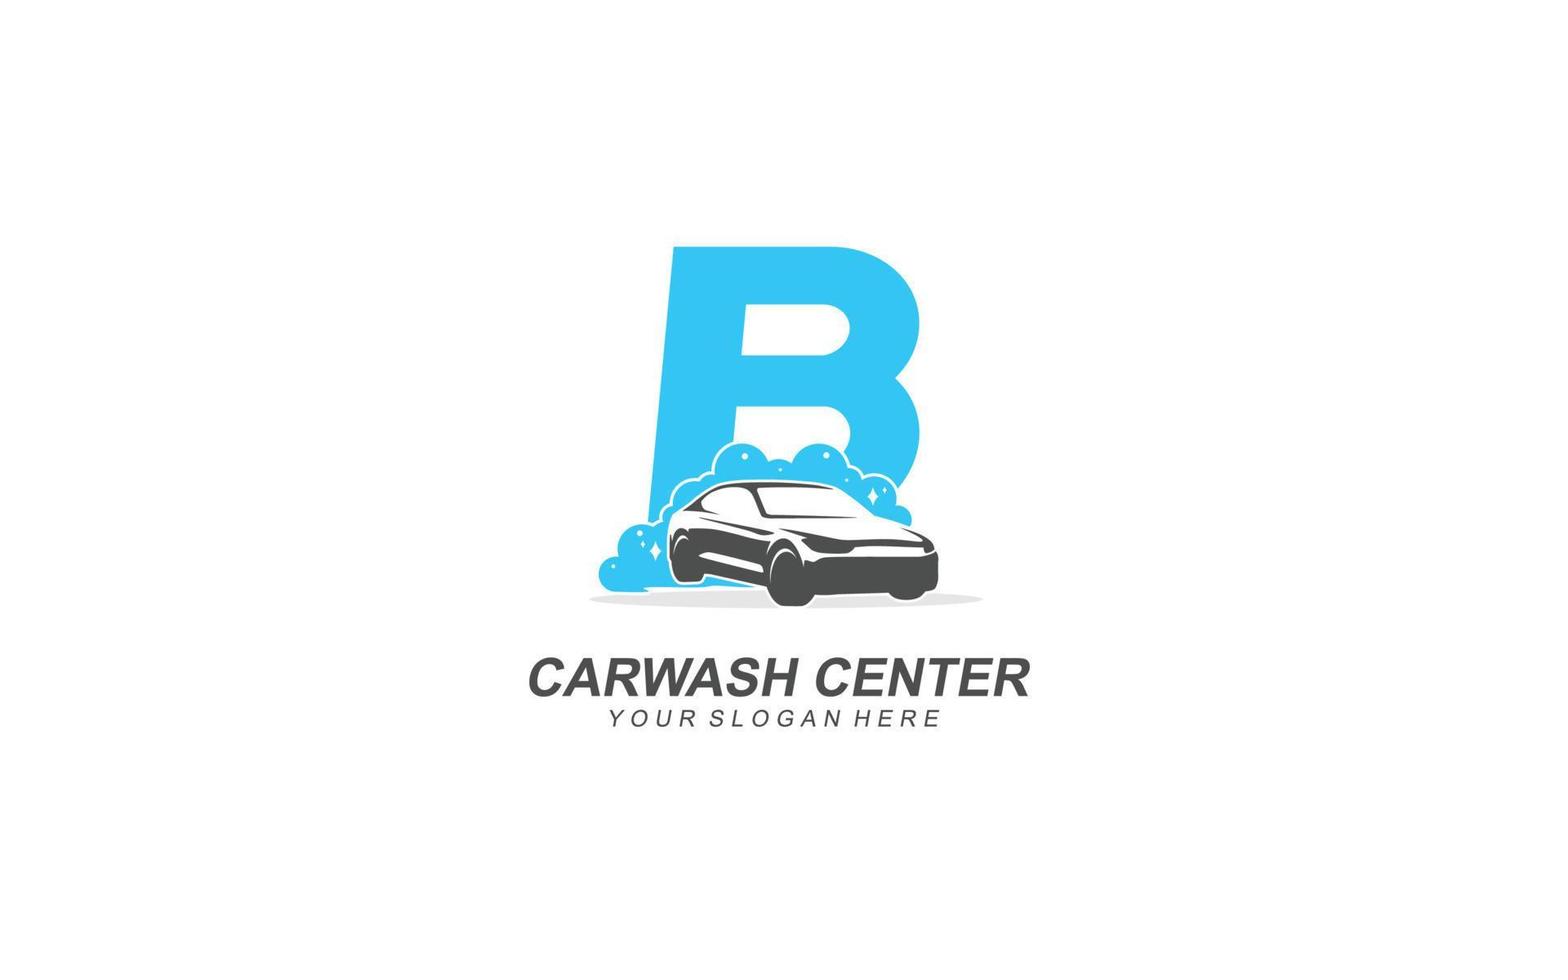 B Car wash logo design inspiration. Vector letter template design for brand.